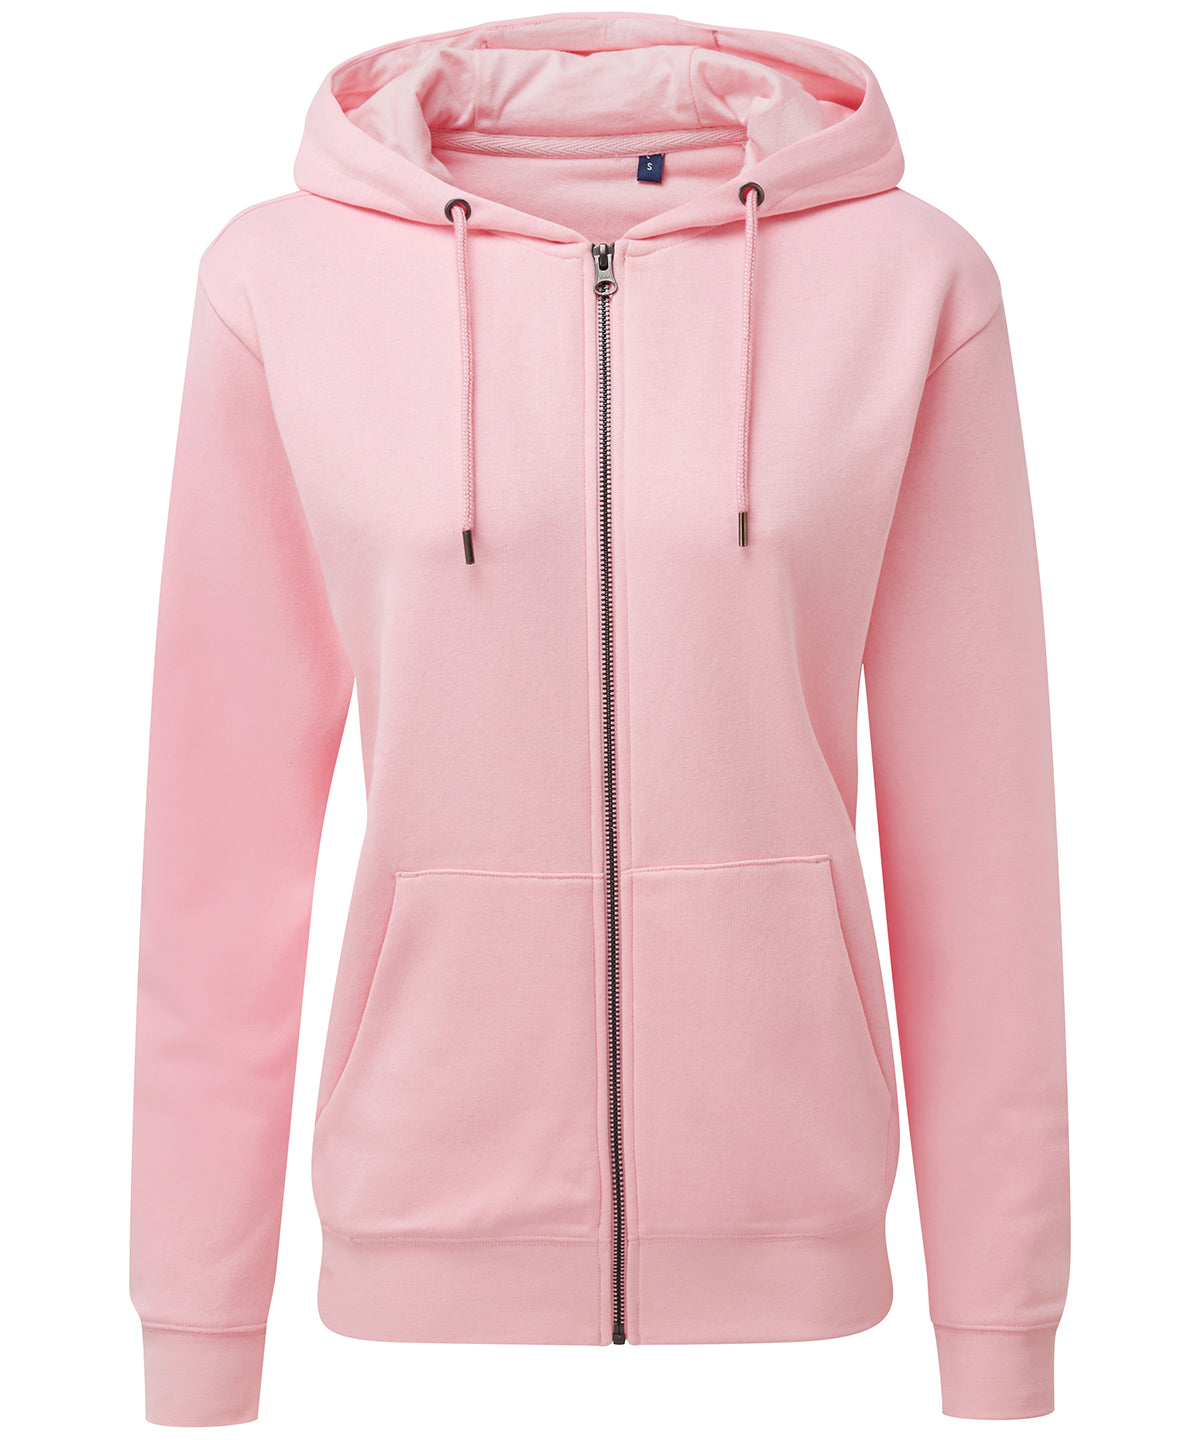 Personalised Hoodies - Mid Red Asquith & Fox Women's zip-through organic hoodie